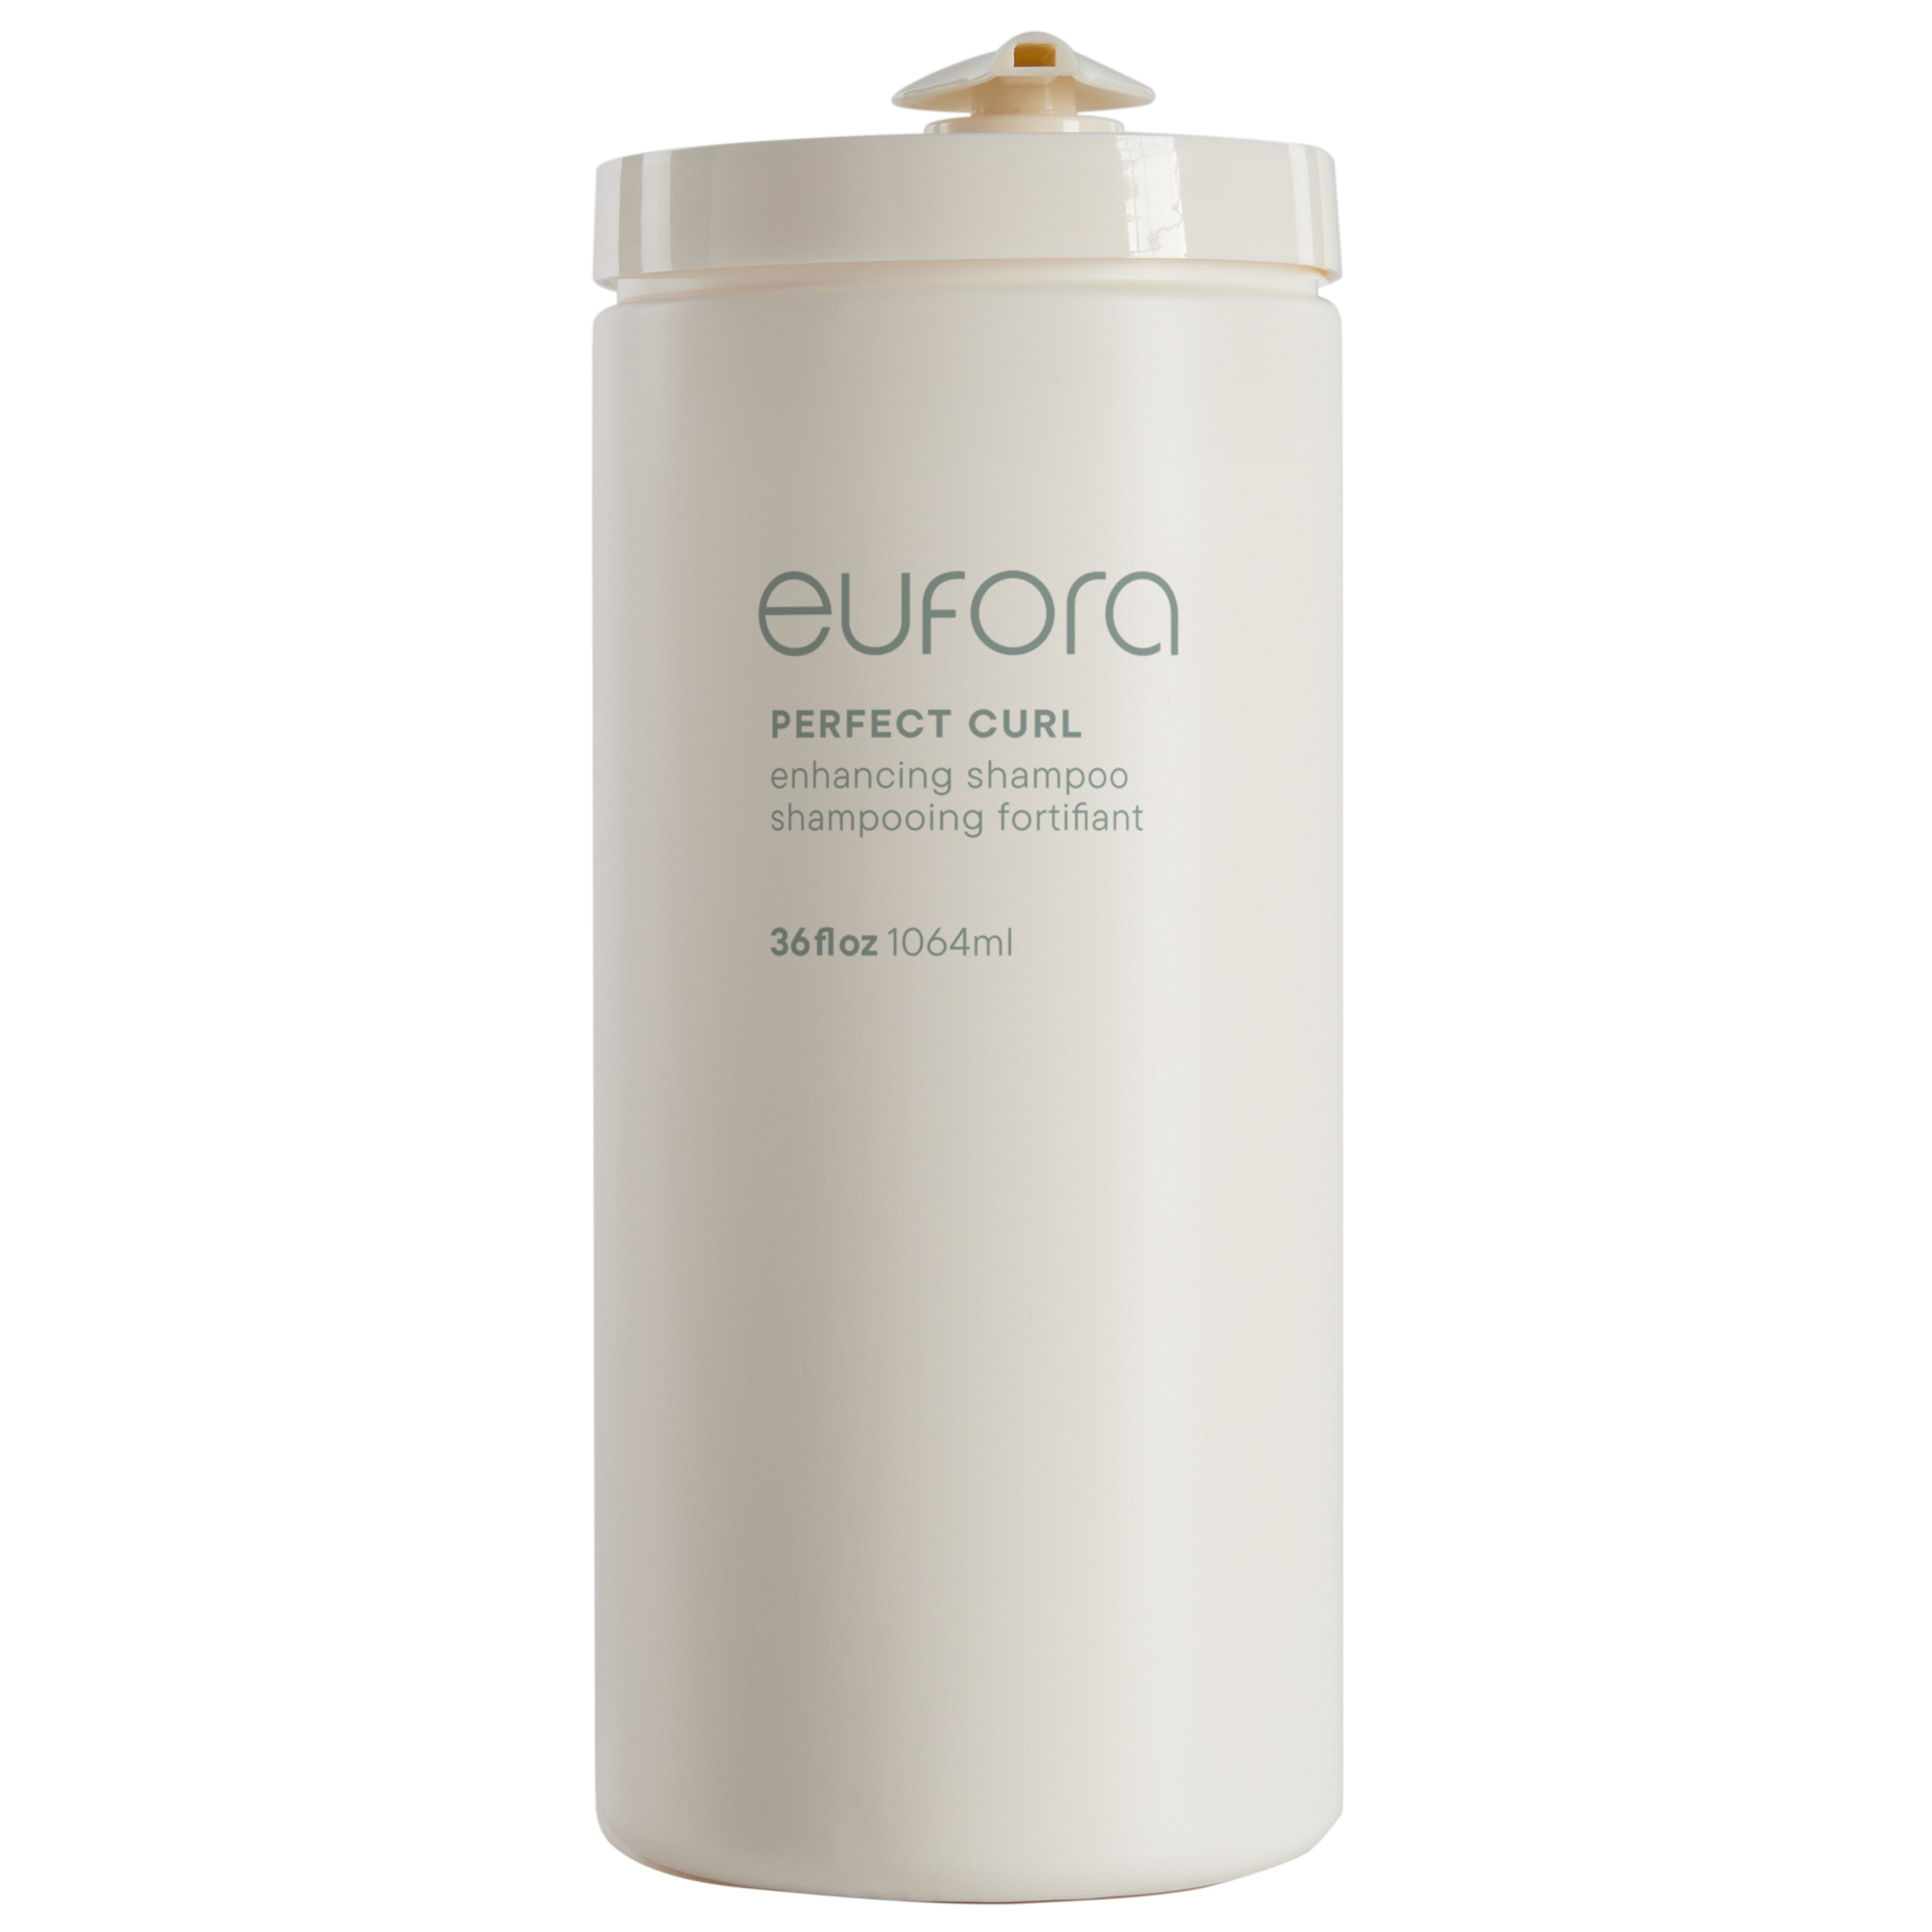 Eufora PERFECT CURL Enhancing Shampoo 36oz